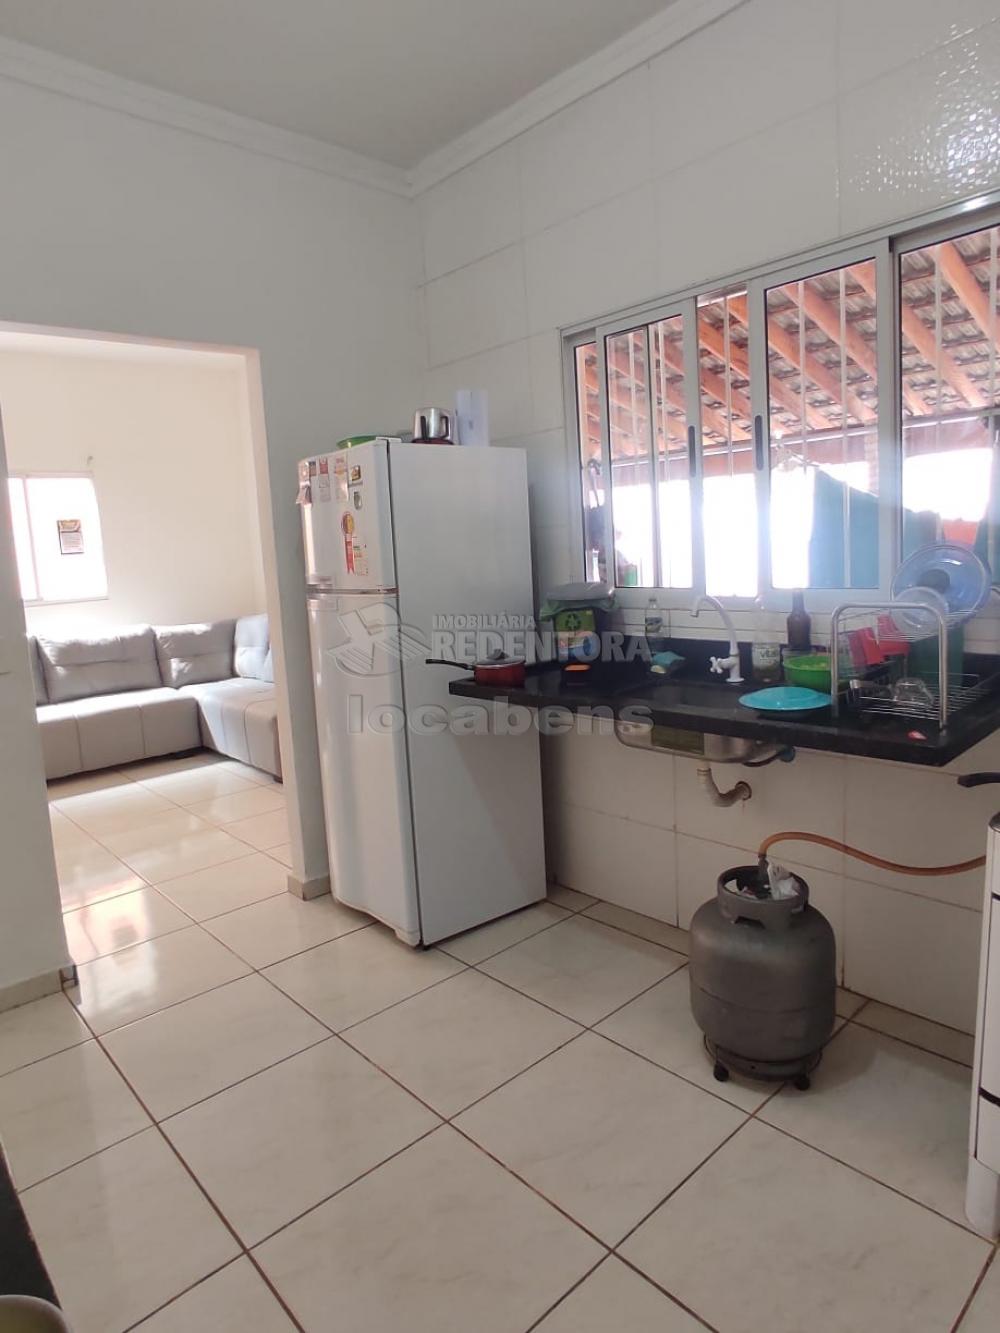 Comprar Casa / Padrão em São José do Rio Preto R$ 270.000,00 - Foto 9